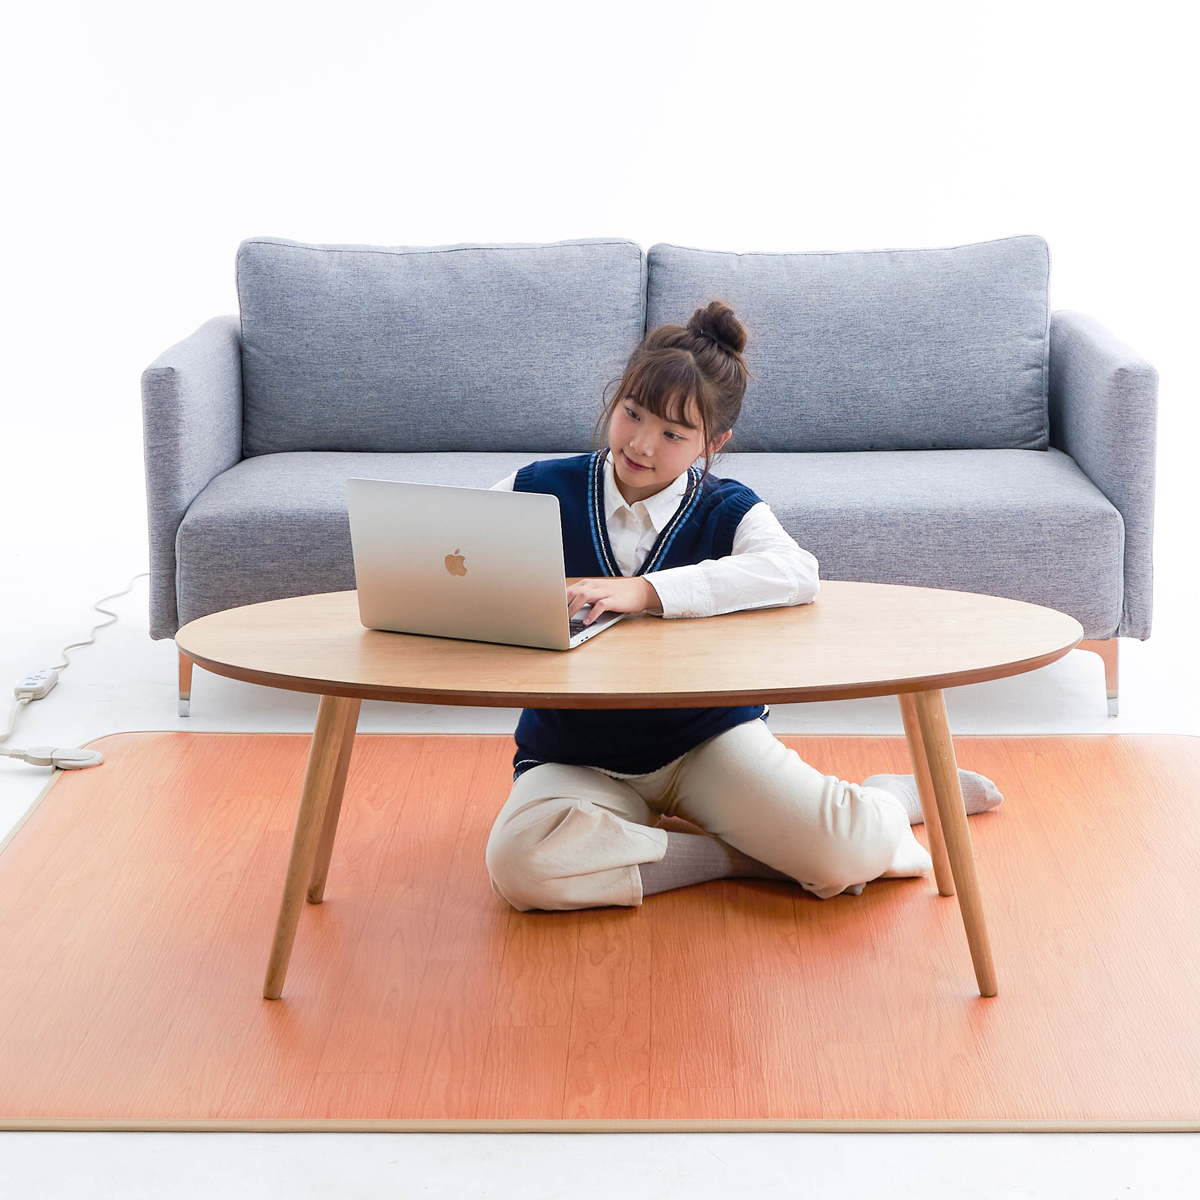 日本碳晶地暖垫客厅家用电热地毯石墨烯加热瑜伽垫游戏爬行垫毯-图2